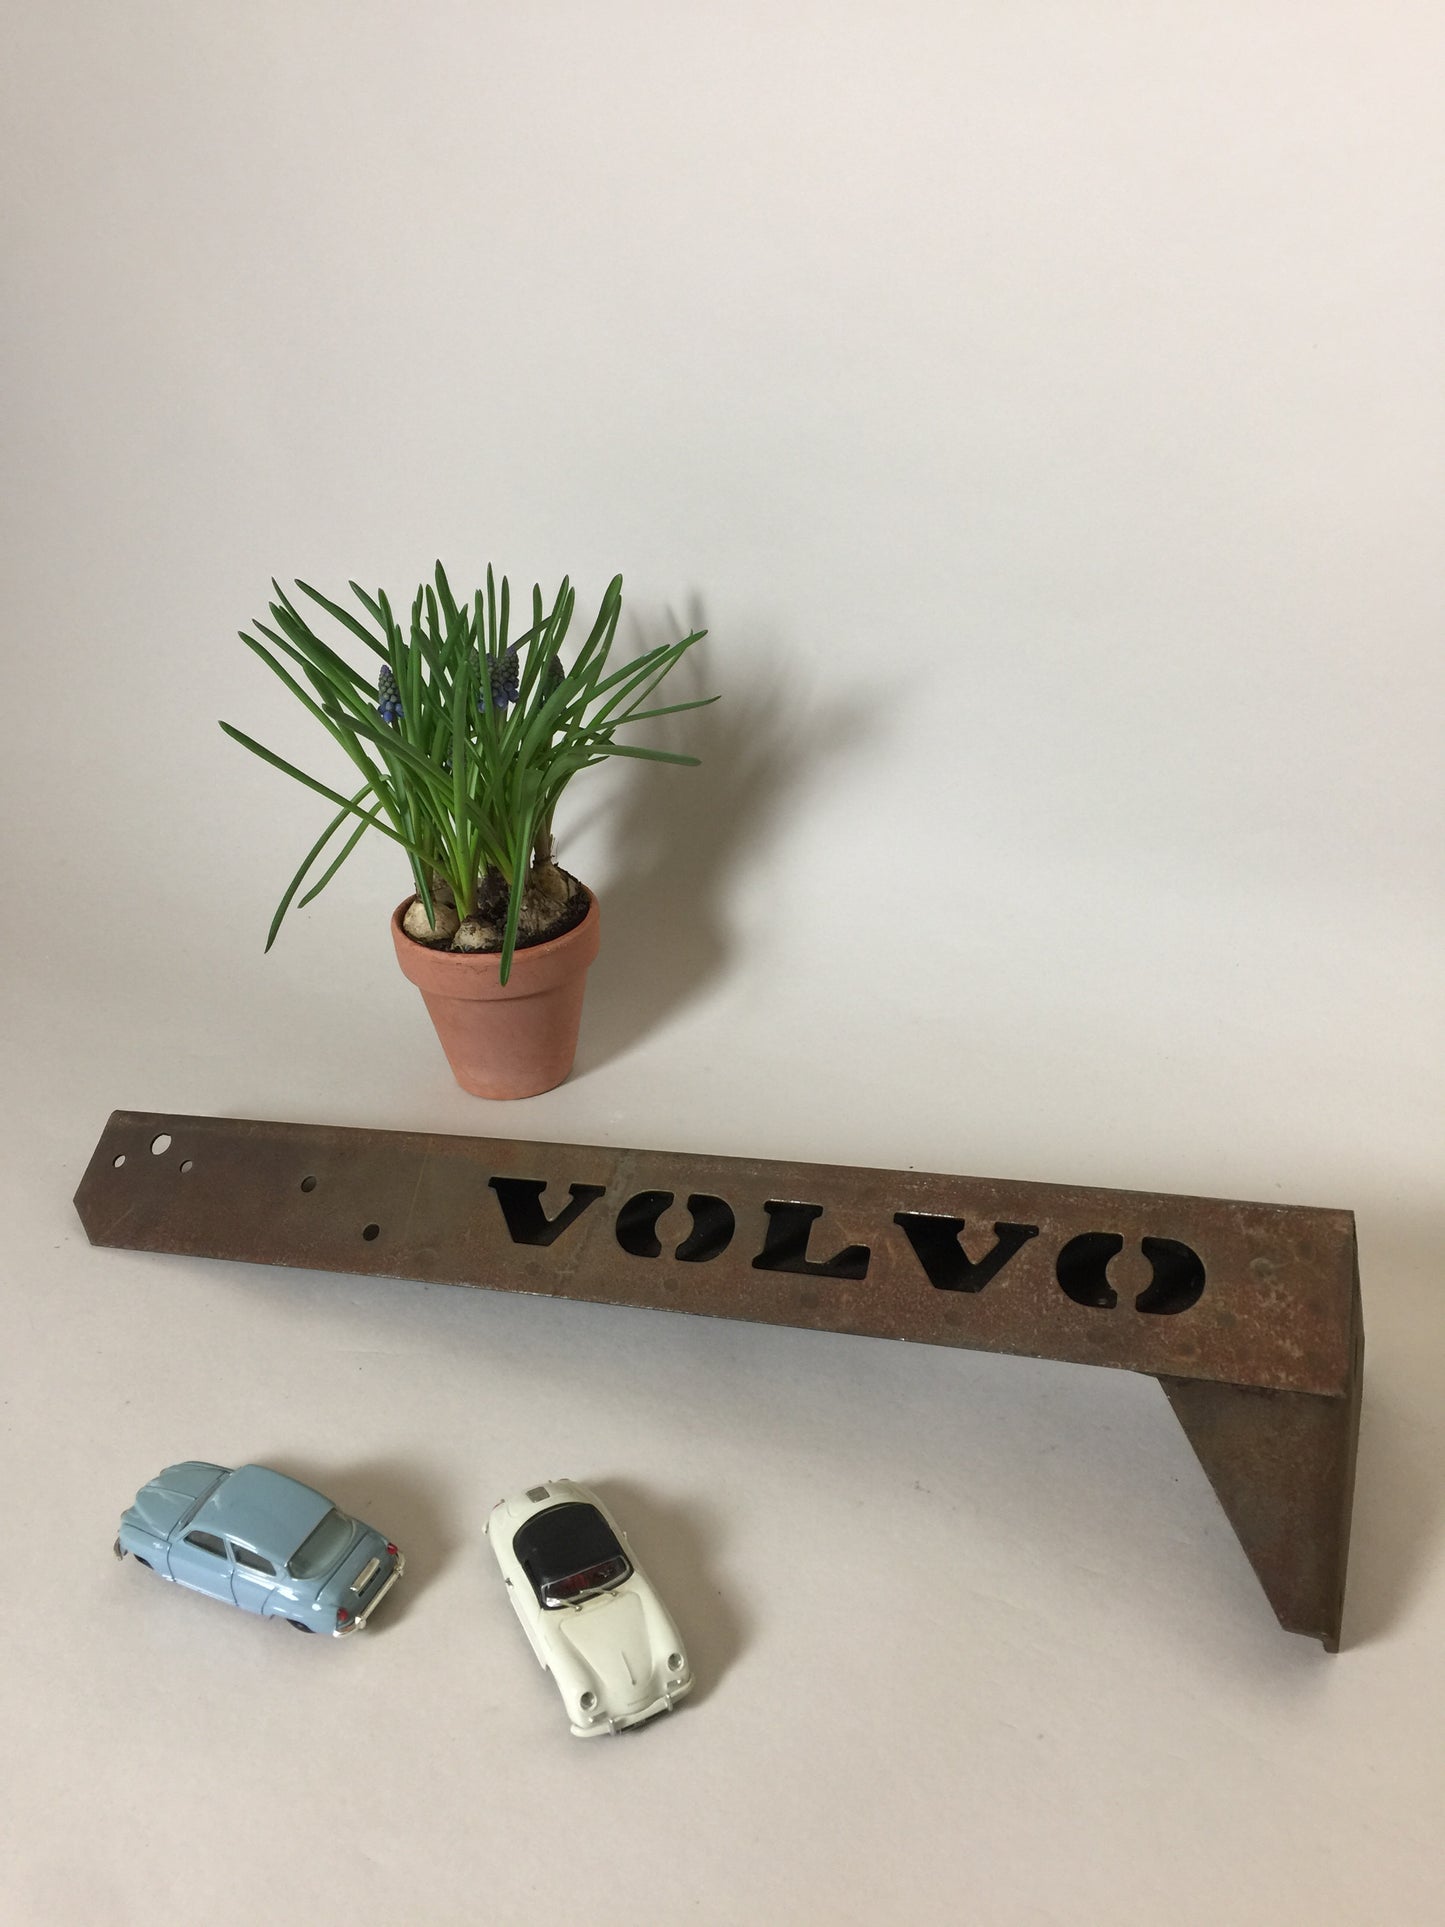 Sjovt gammelt Volvo “skilt”